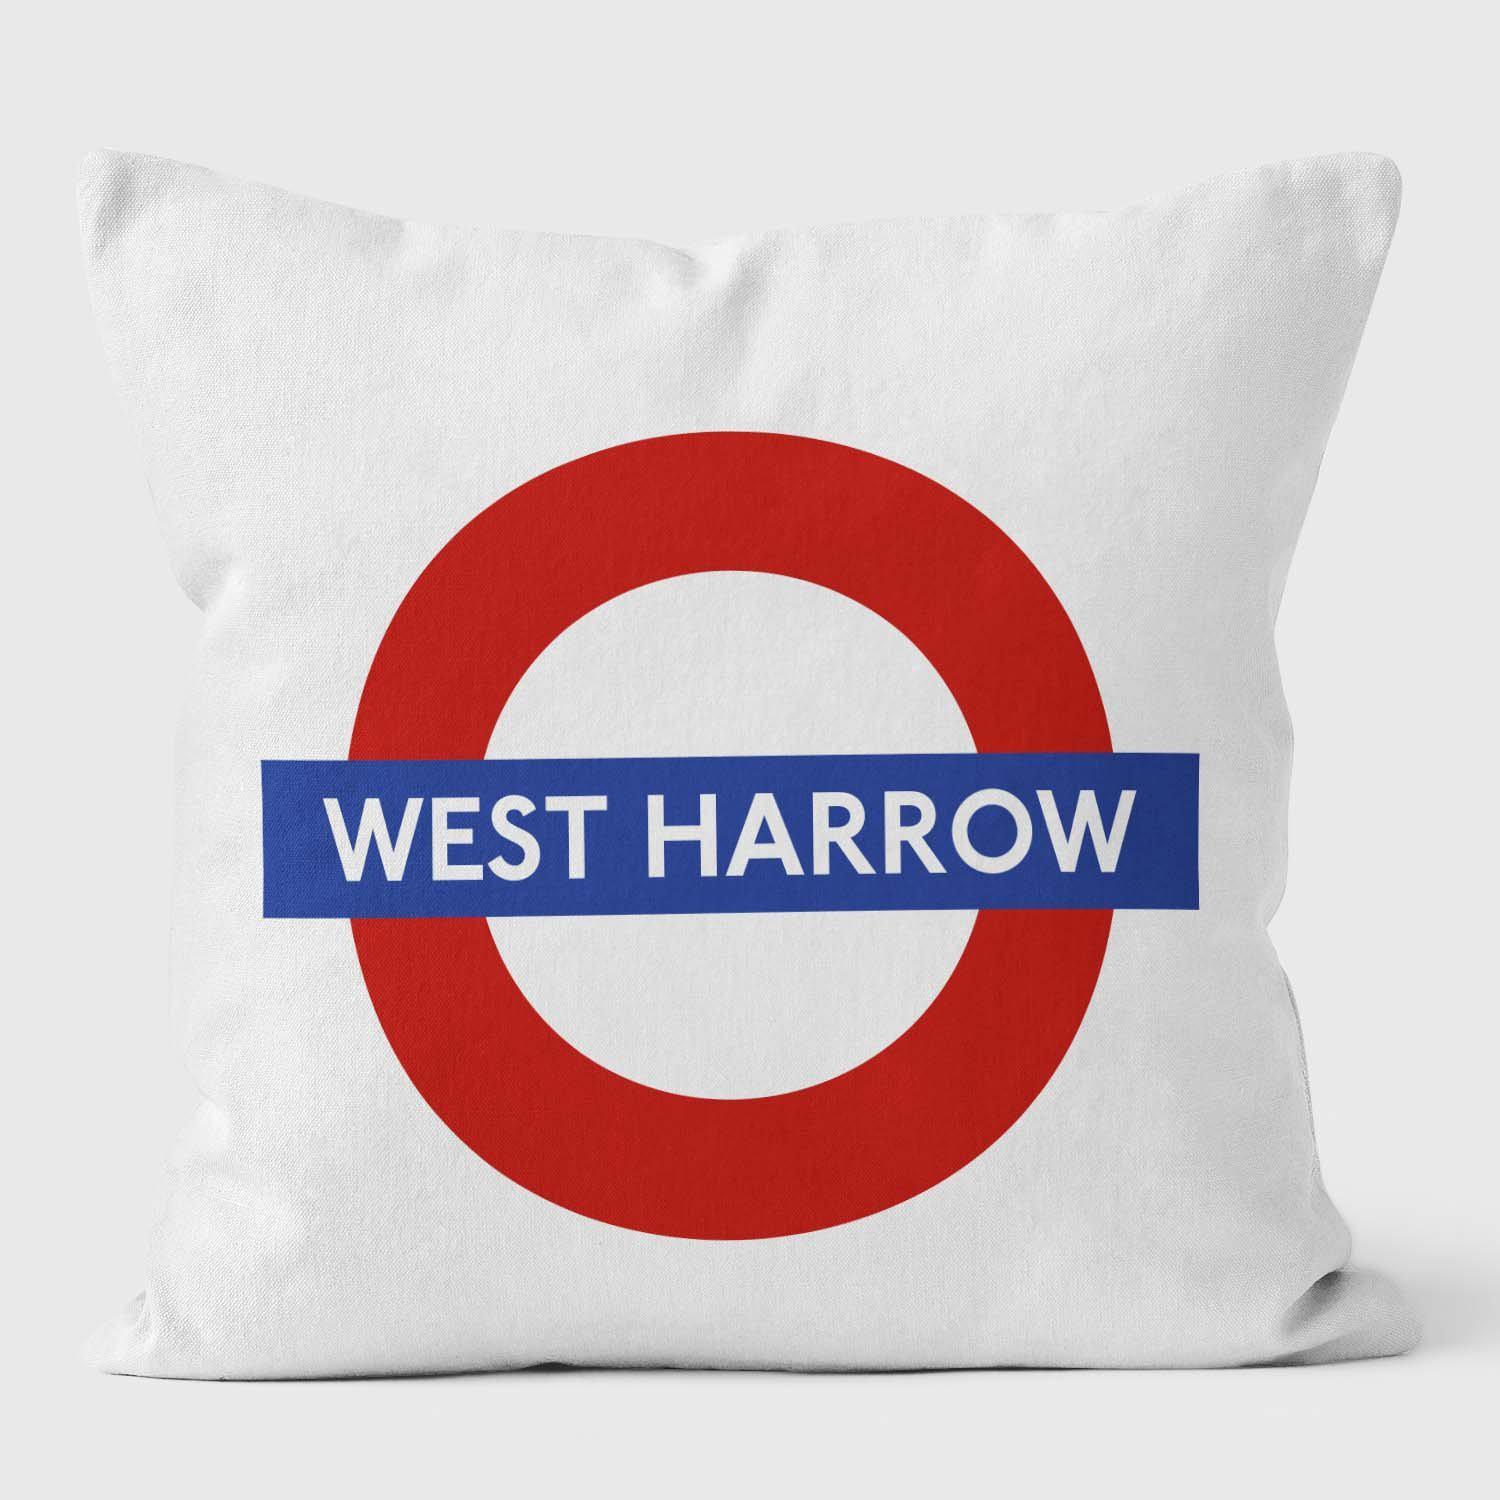 West Harrow London Underground Tube Station Roundel Cushion - Handmade Cushions UK - WeLoveCushions